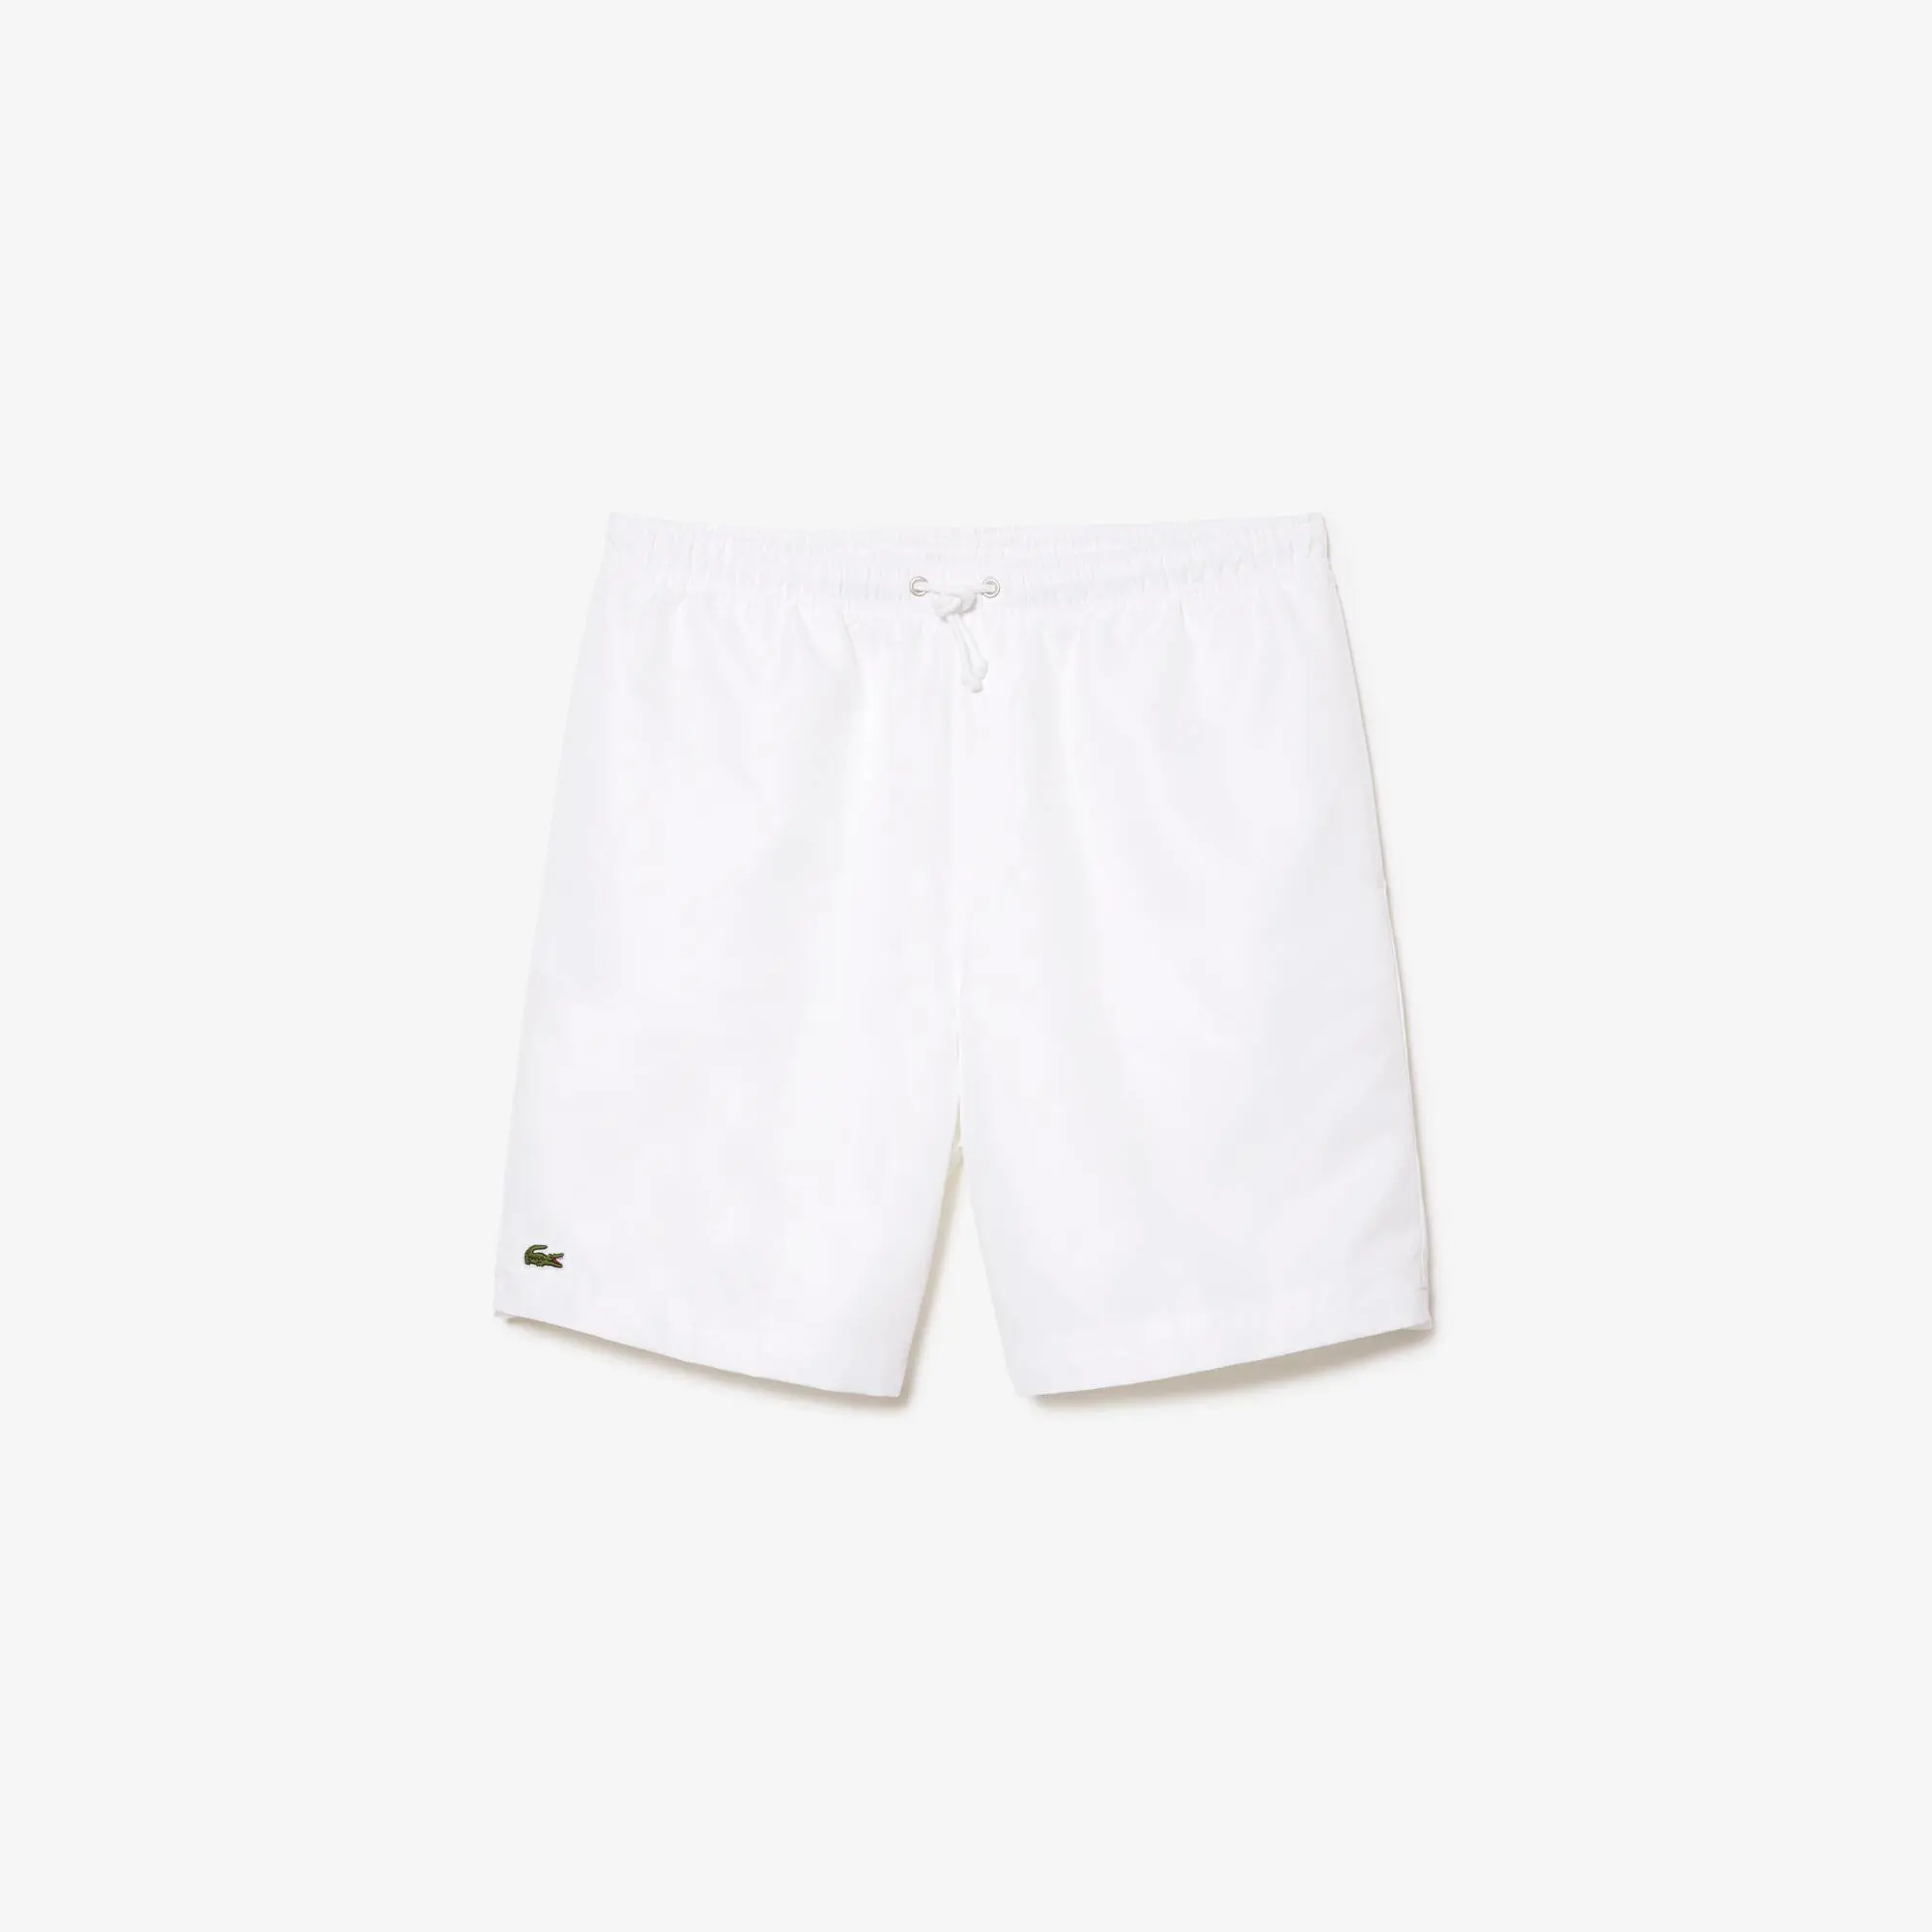 Lacoste Men's Lacoste SPORT tennis shorts in solid diamond weave taffeta. 2